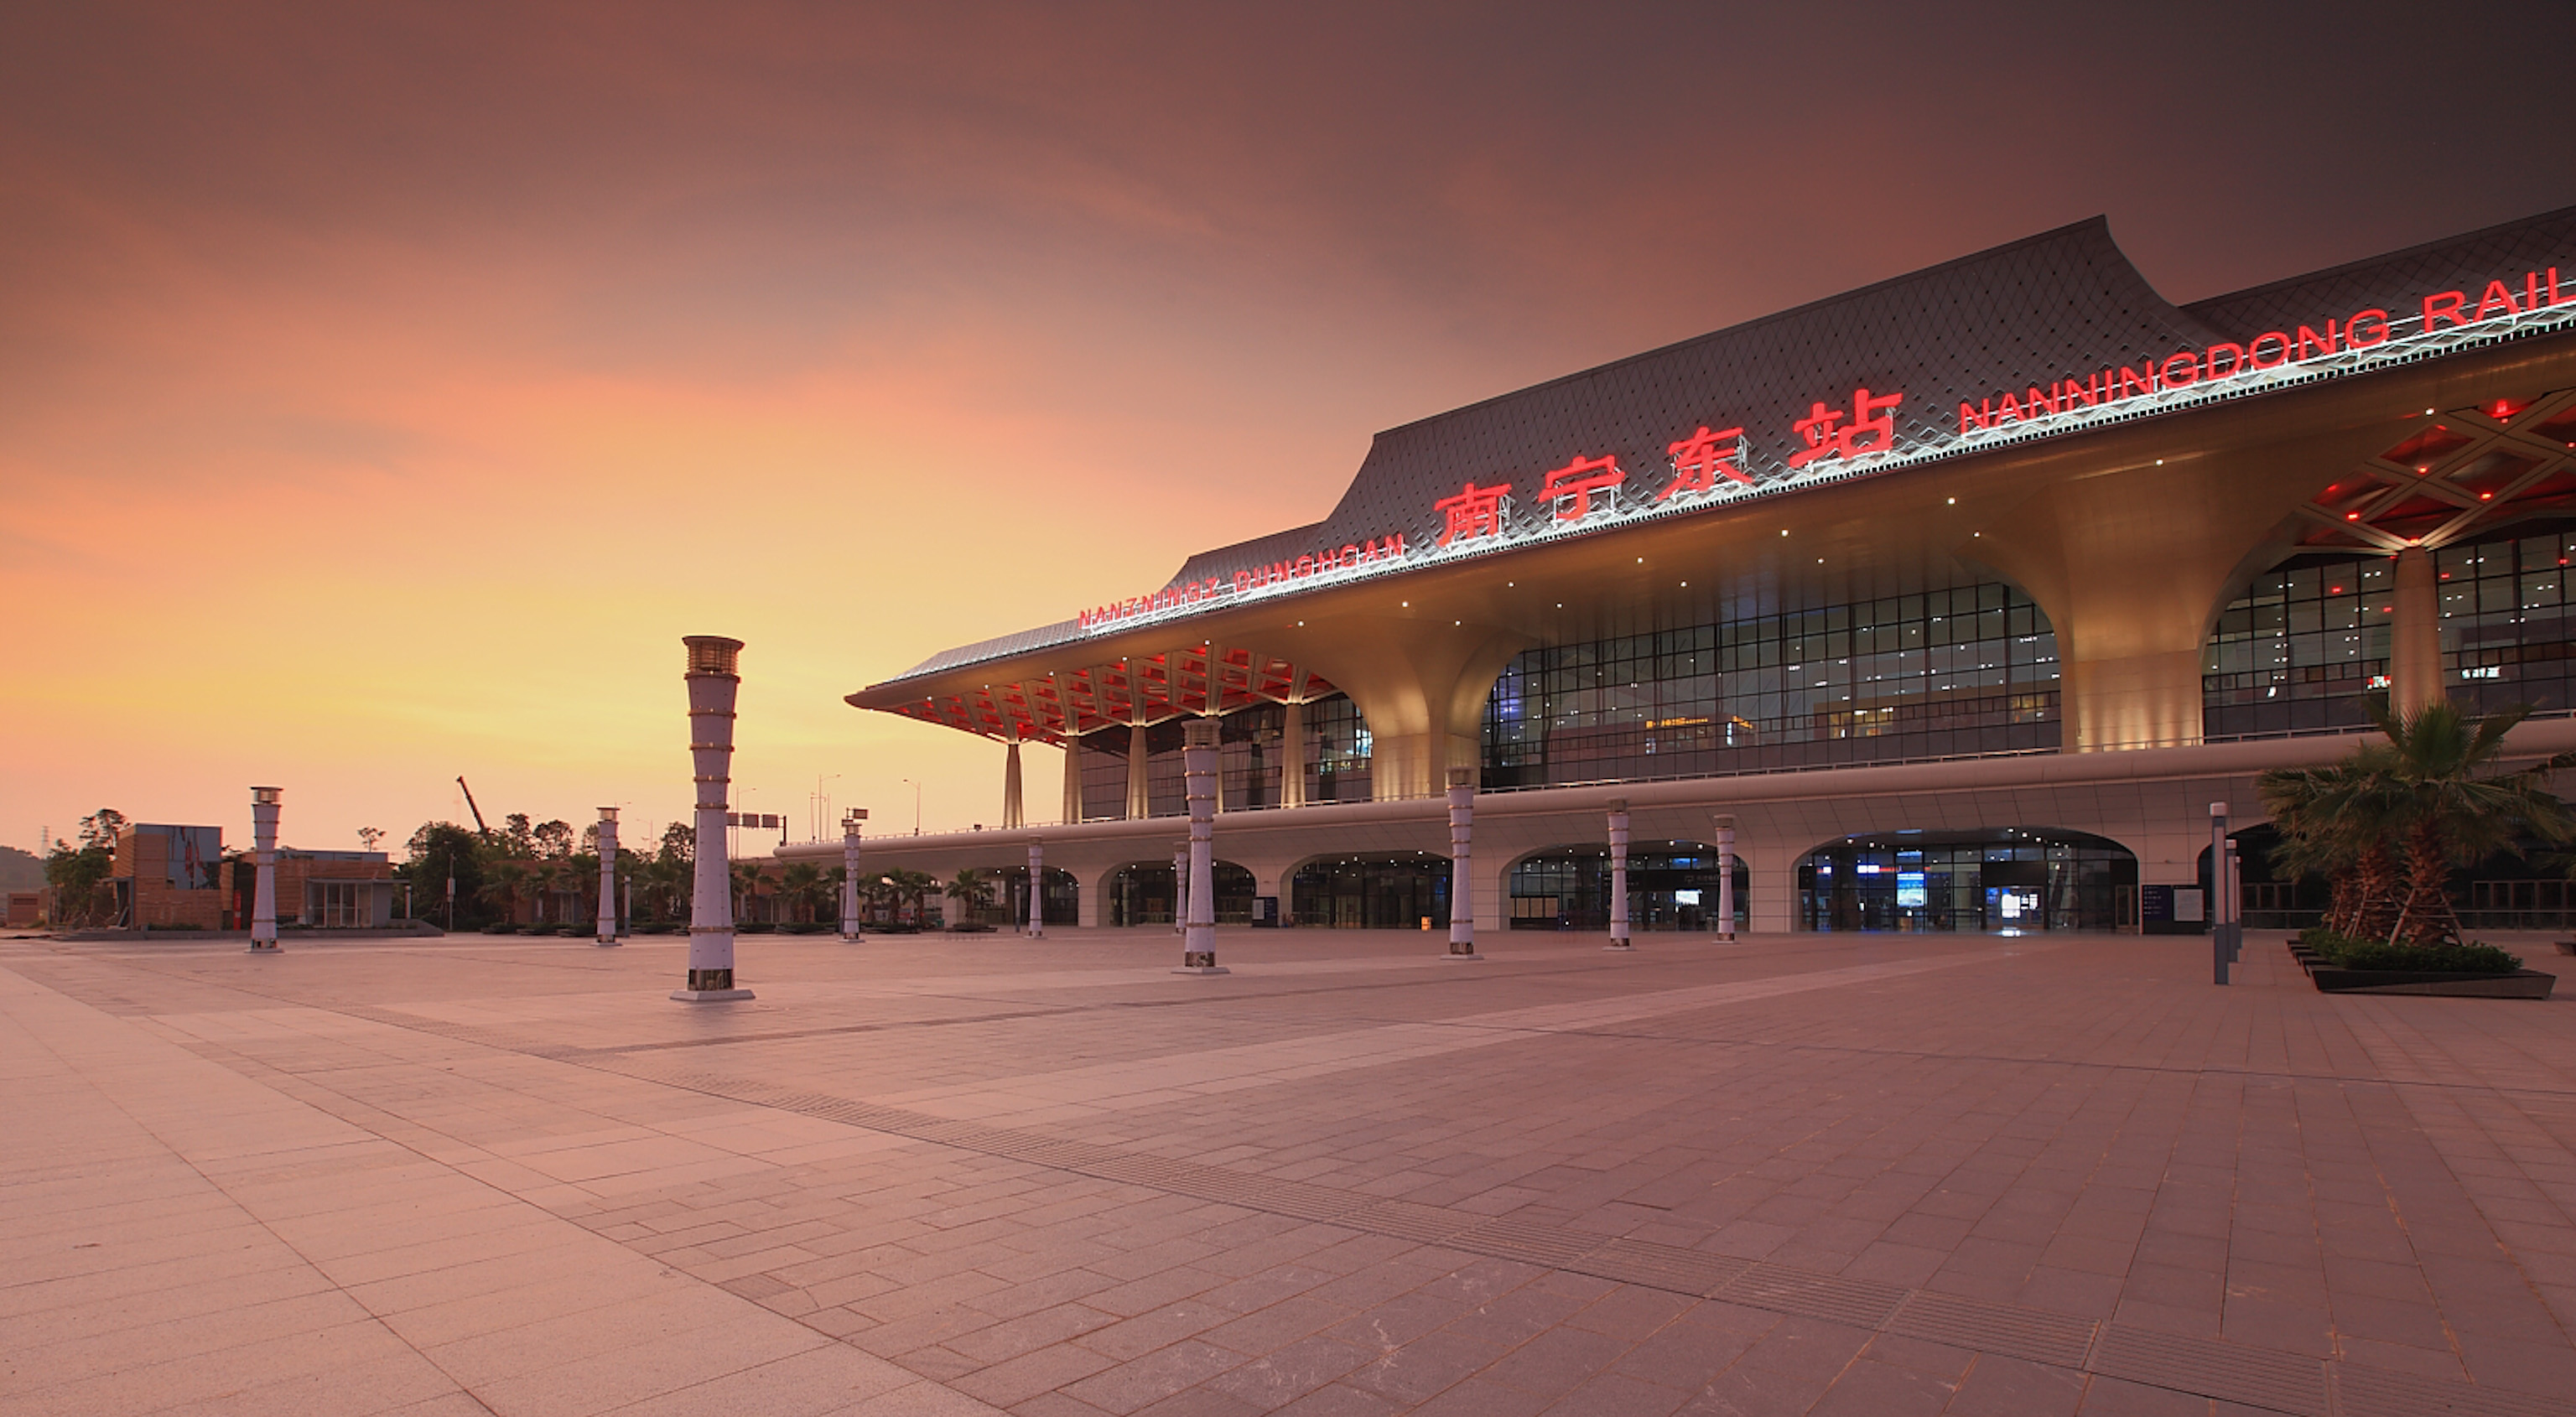 【携程攻略】景点,南宁东火车站，是新投入运行的高铁站。这里高铁发展相对比较晚，过往…